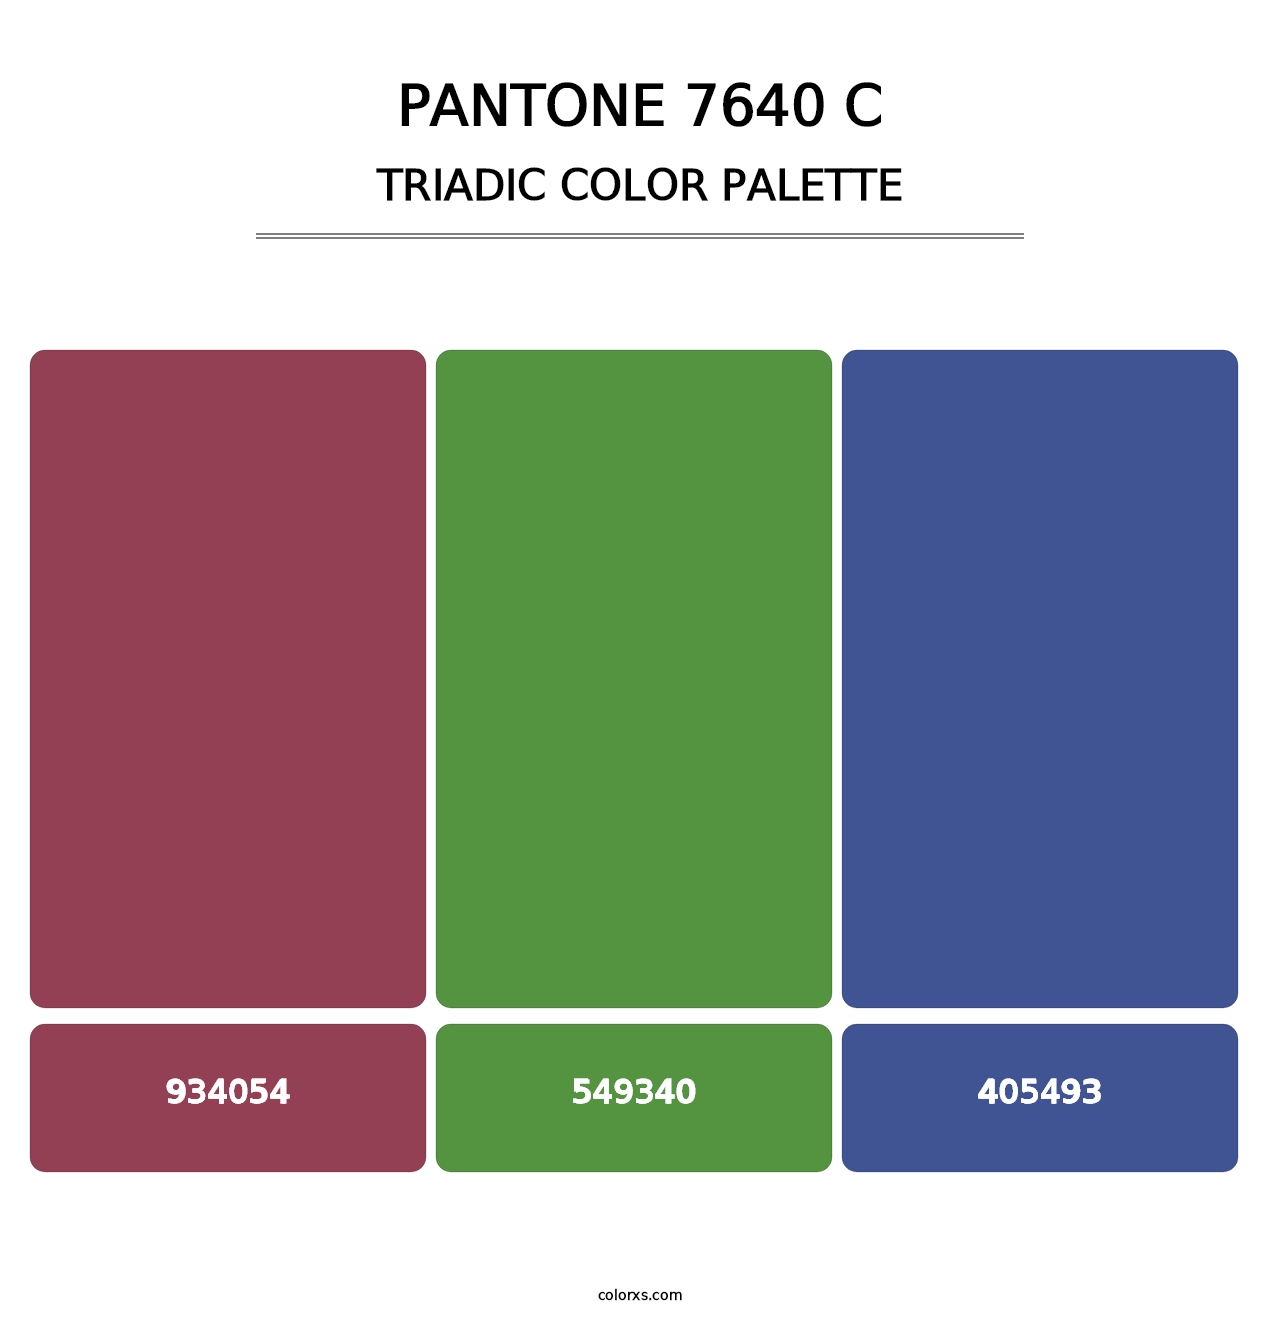 PANTONE 7640 C - Triadic Color Palette